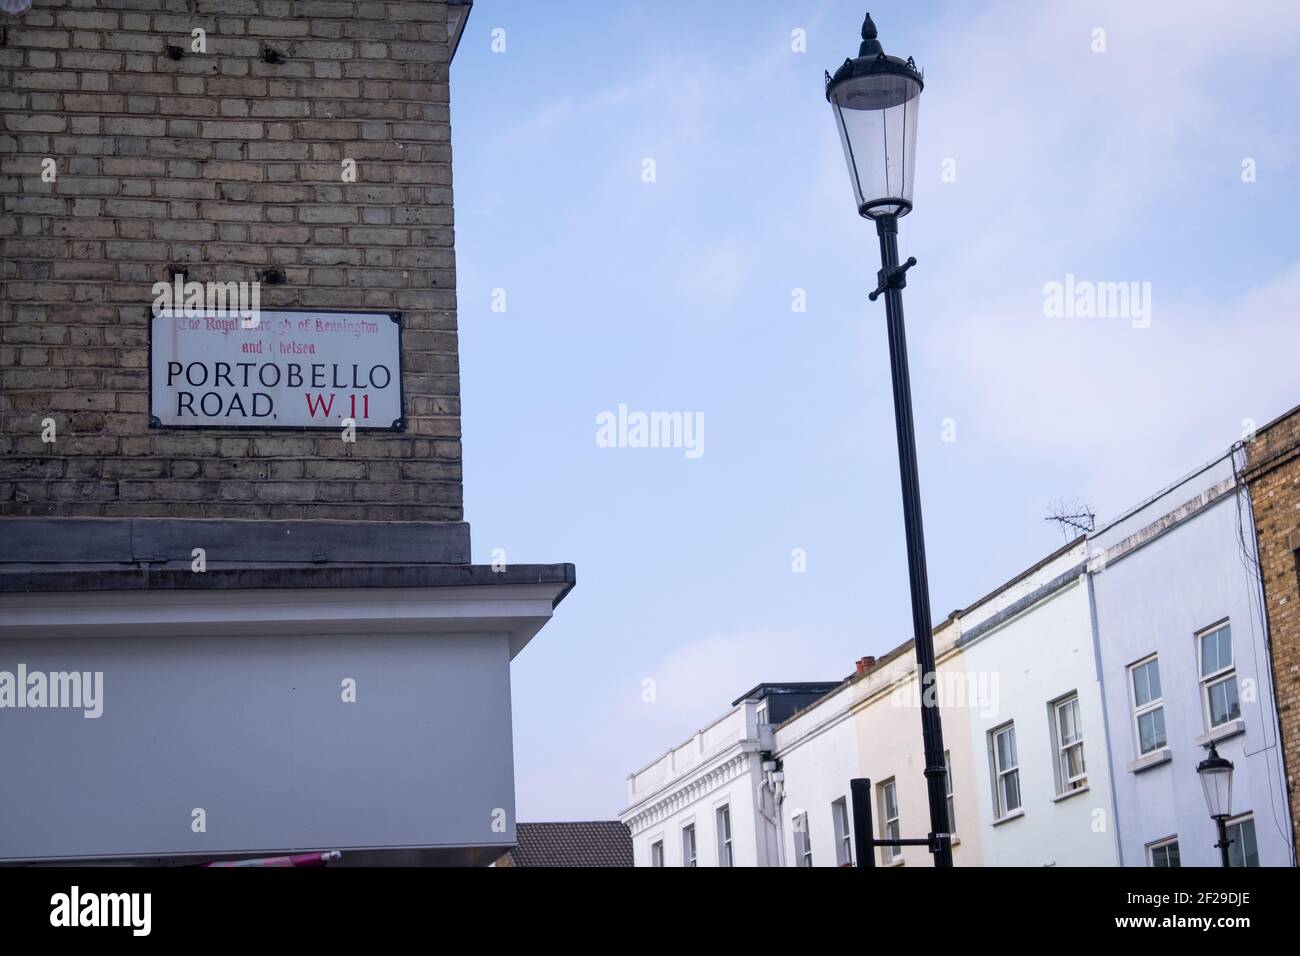 Londres- Mars 2021: LONDON- Portobello Road panneau de rue. Une célèbre rue de Londres avec un marché de rue animé. Banque D'Images